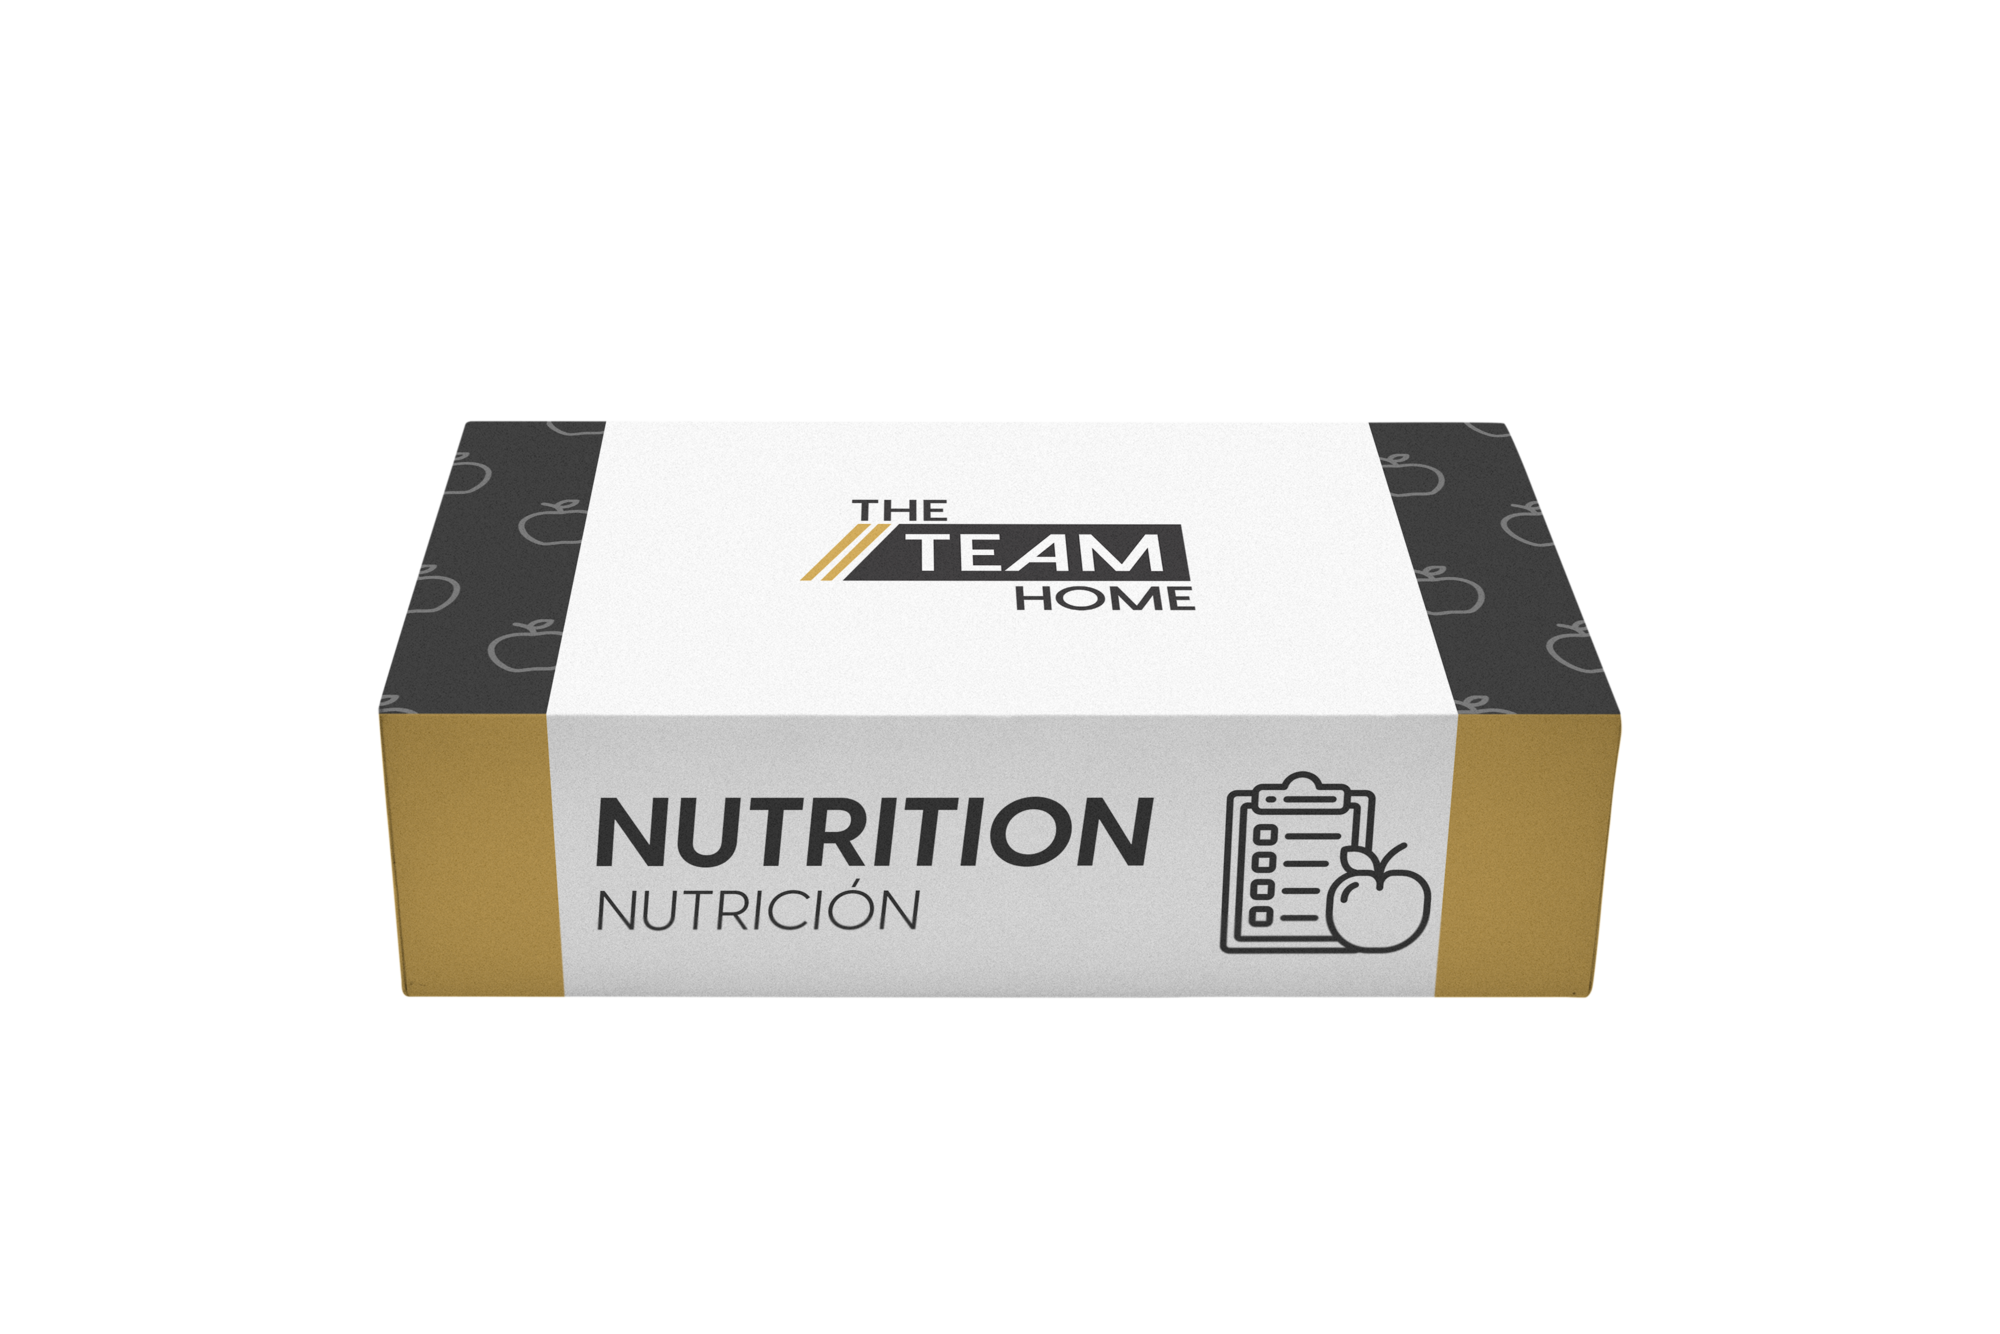 Plan personalizado Nutrition para tu entrenamiento personal con The Team Home